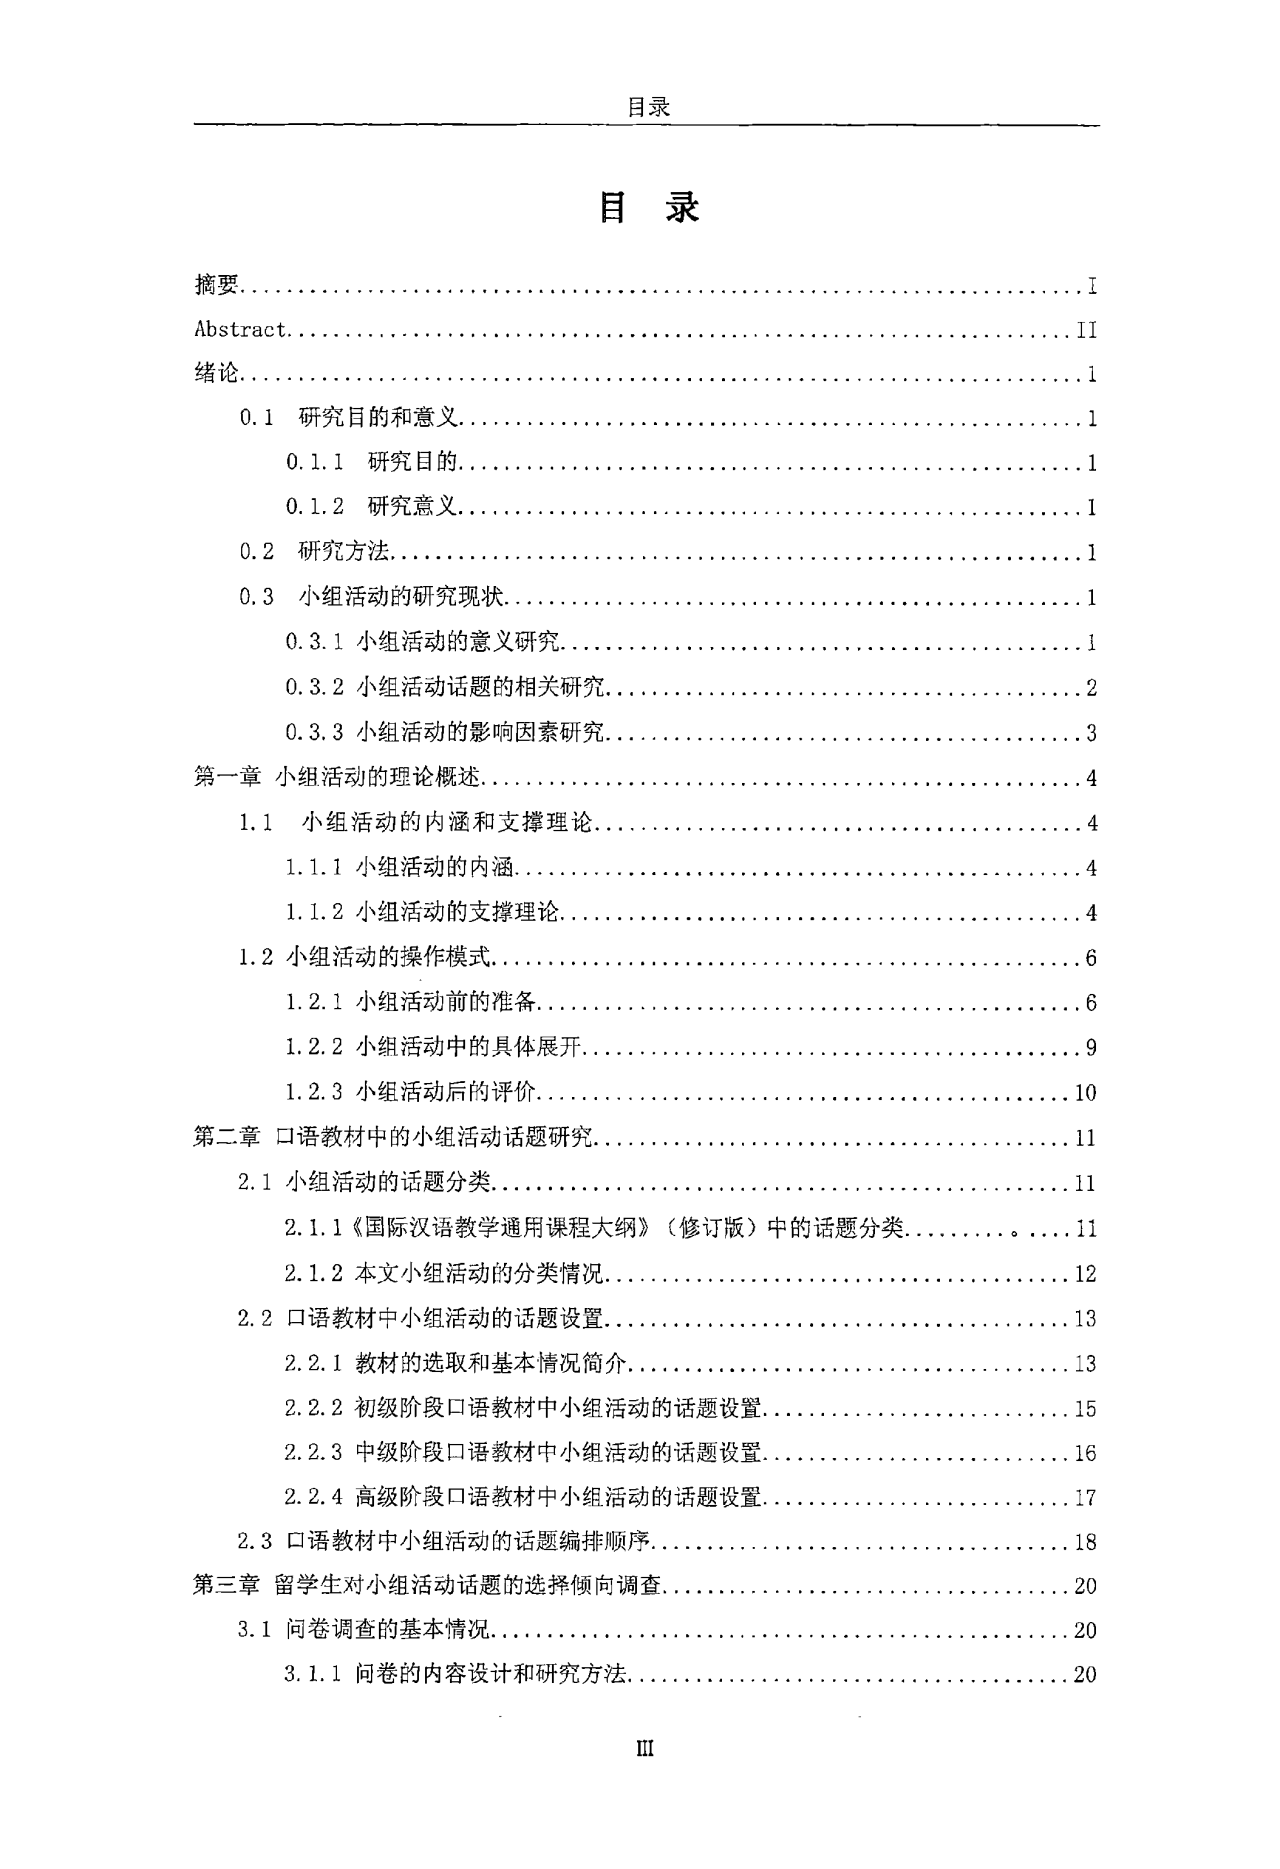 对外汉语口语课教材中的小组活动话题研究